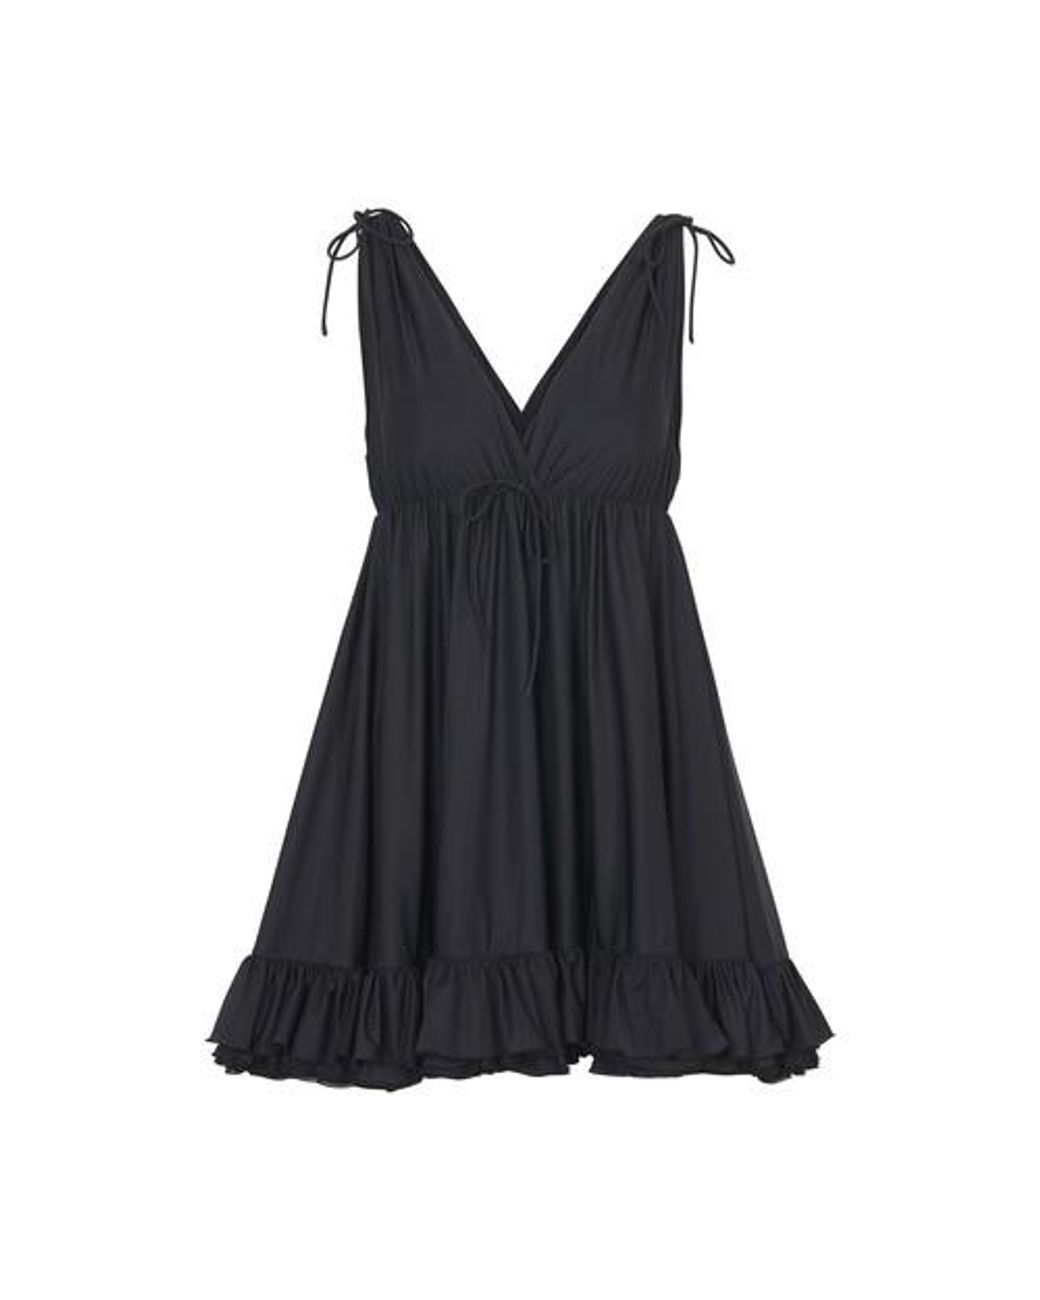 Balenciaga Wool Babydoll Top in Black | Lyst